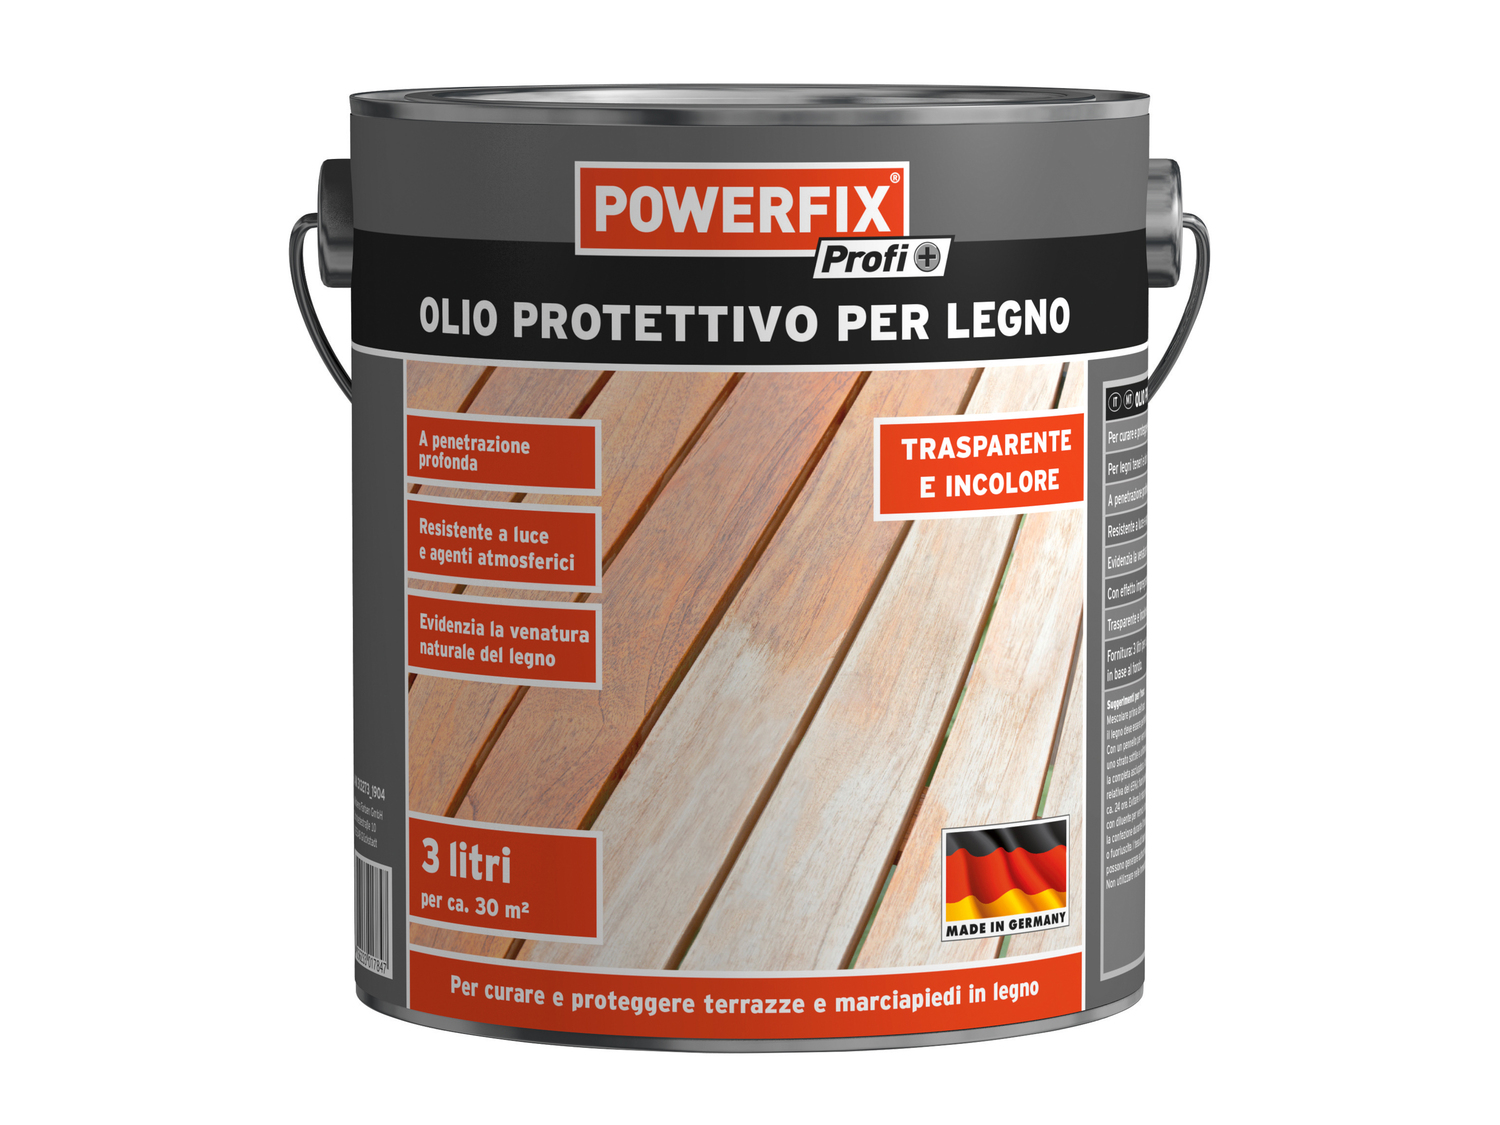 Olio protettivo per legno Powerfix, prezzo 11.99 &#8364; 
3 L 
- Resistente ...